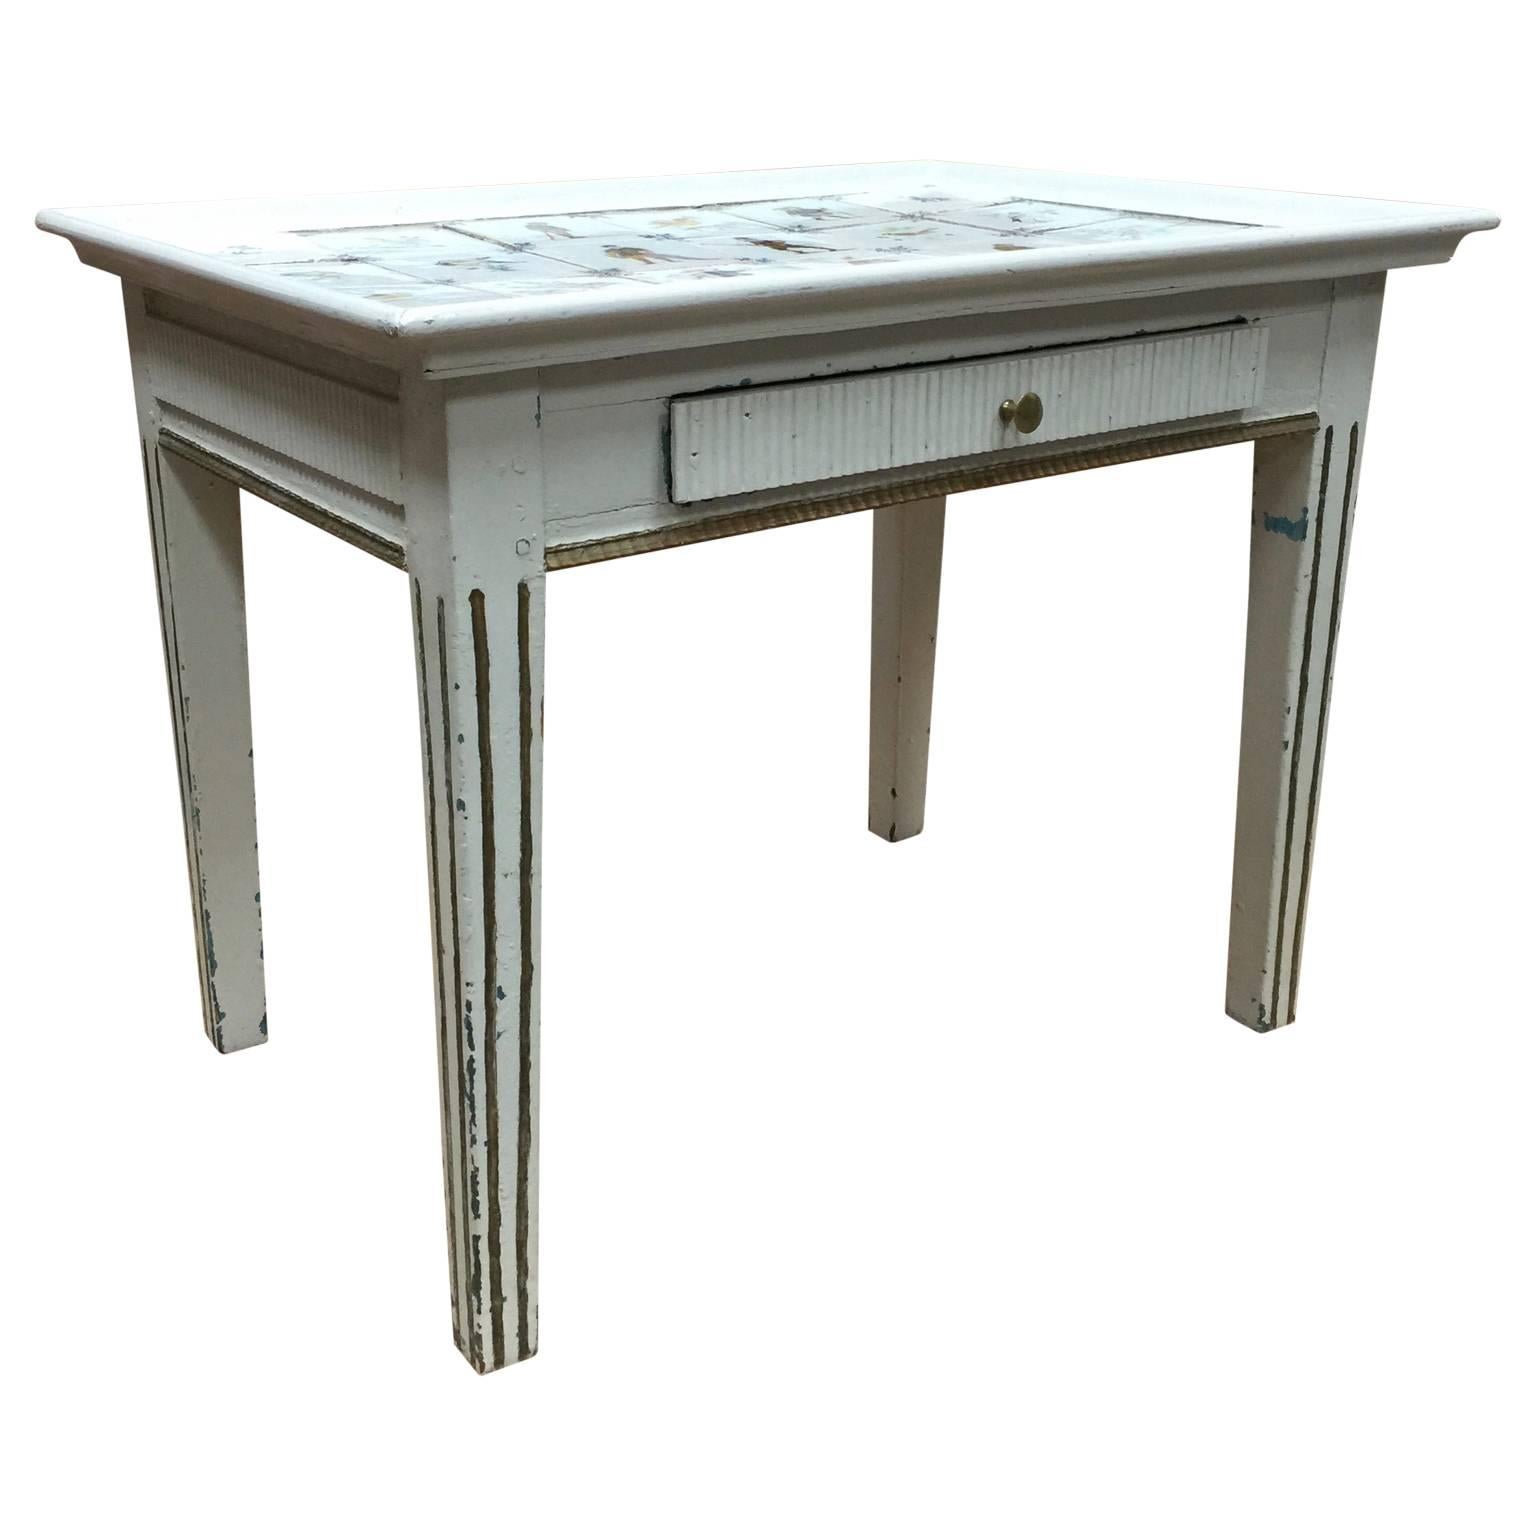 Table gustavienne à un tiroir. Plateau de table avec incrustation de carreaux de delft polychromes colorés.